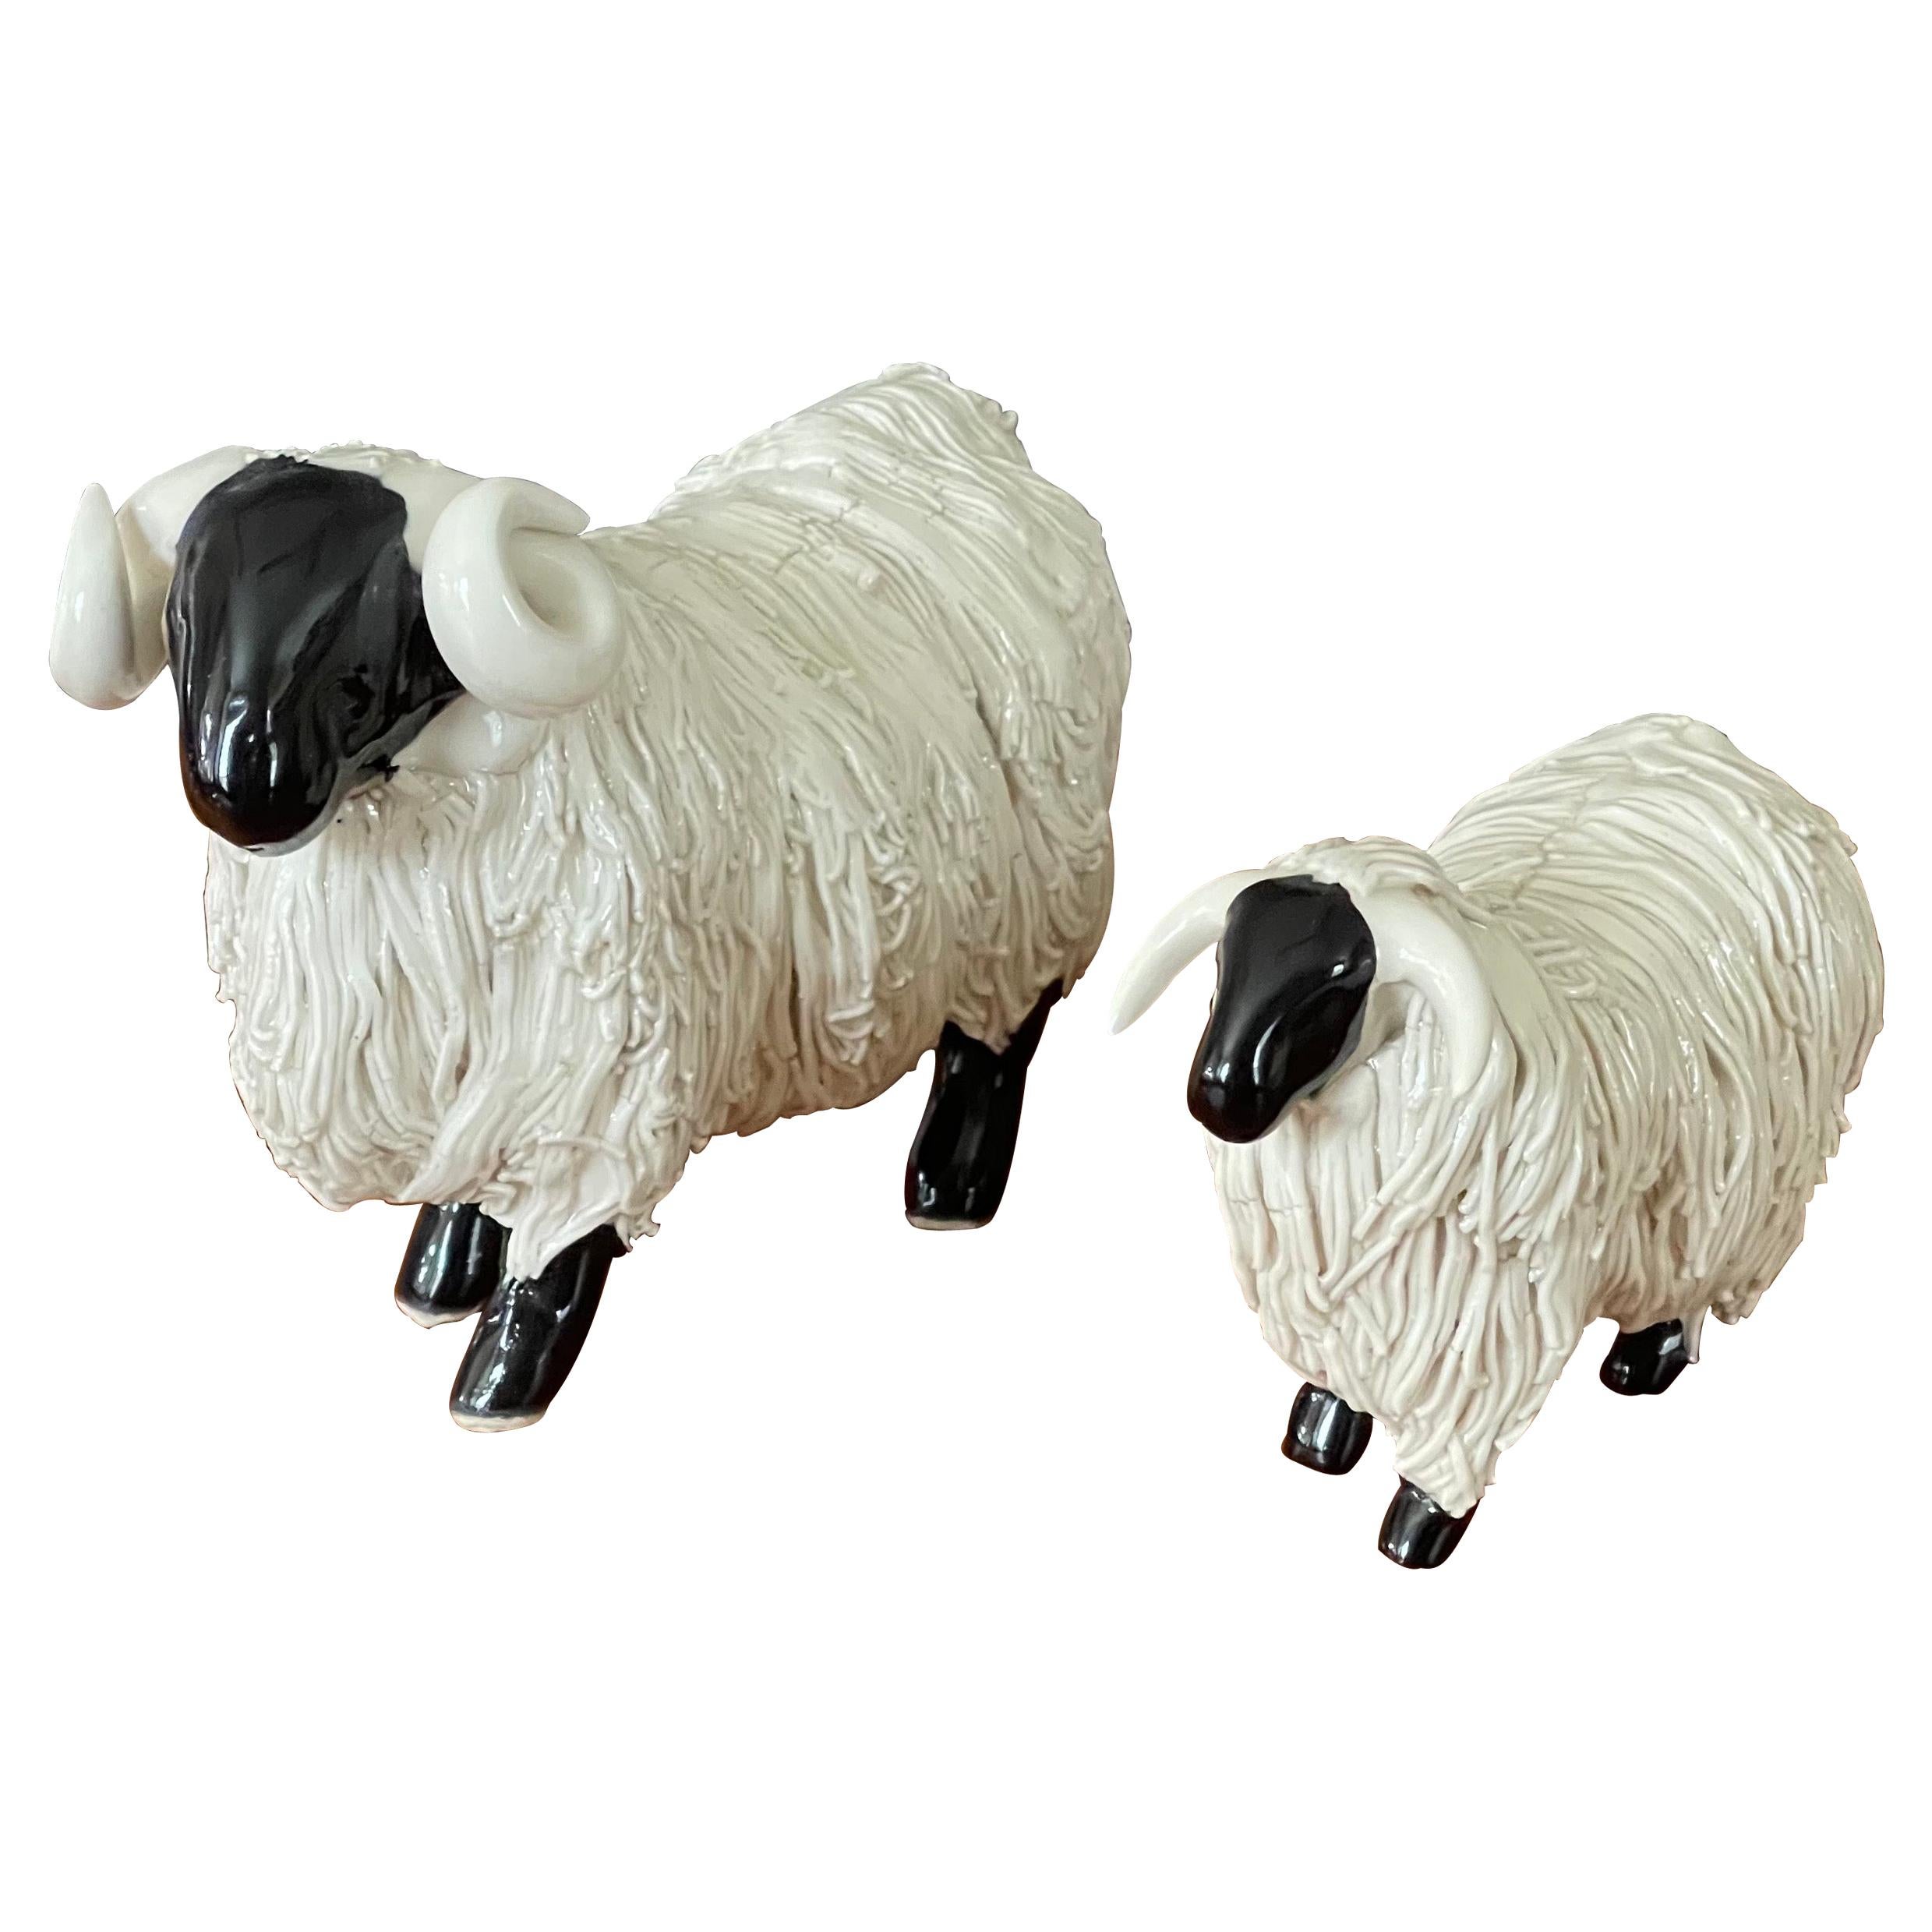 Pair of Midcentury Ceramic Rams / Sheep Figurines